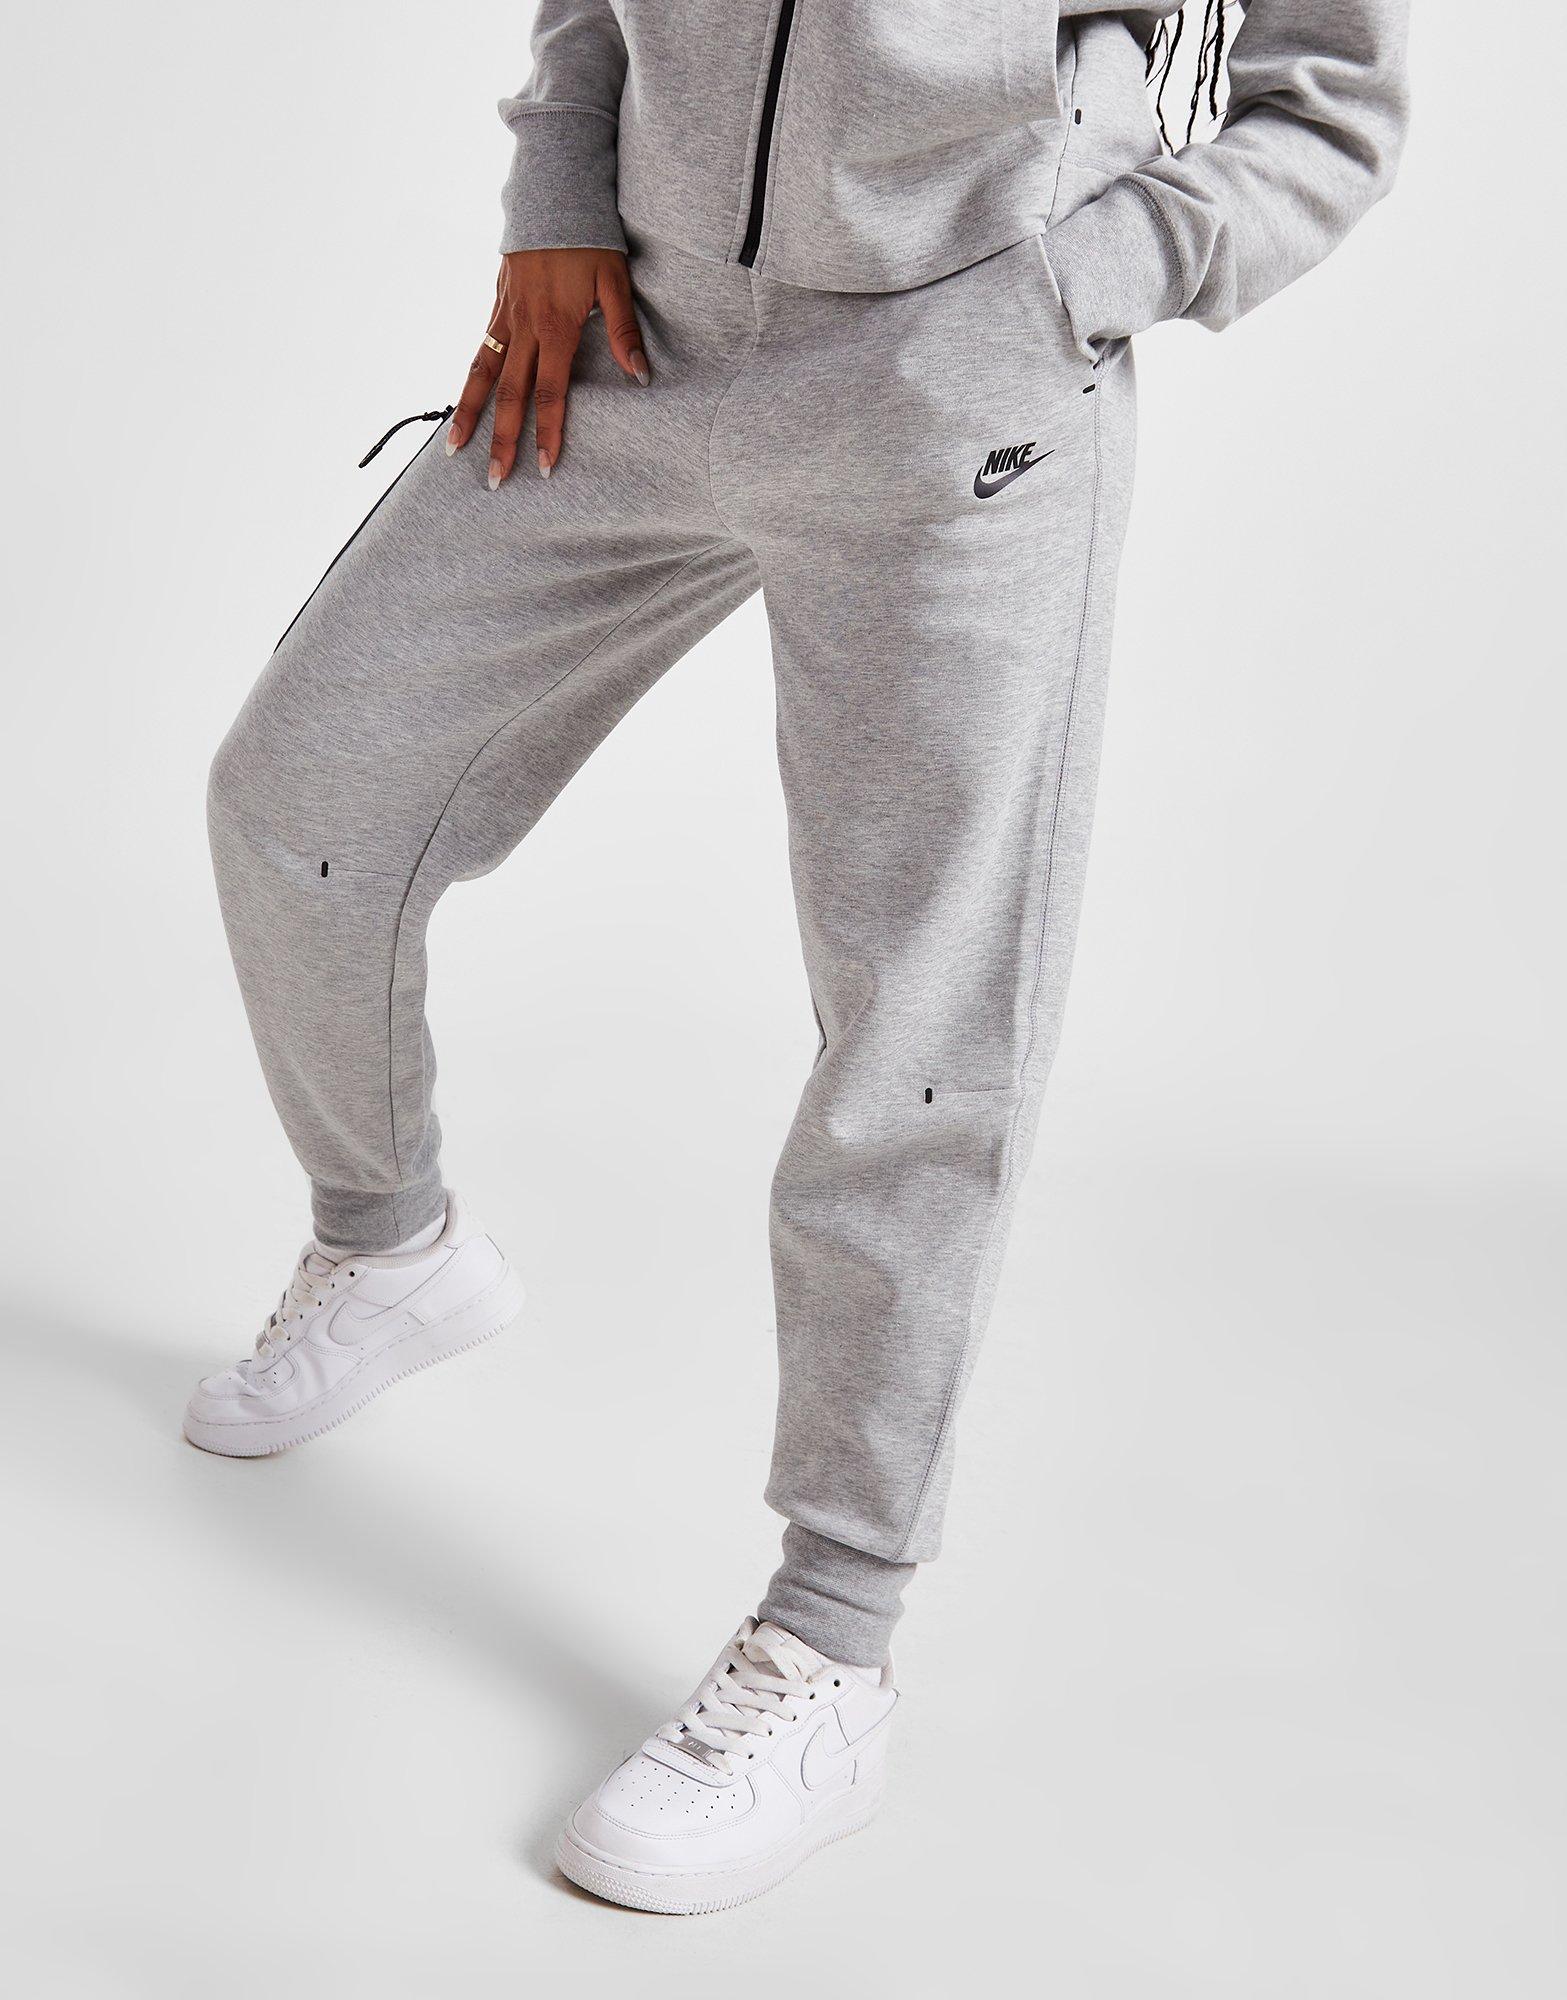 Nike Tech Fleece Grey Pants Cheapest Purchase, Save 52% | jlcatj.gob.mx